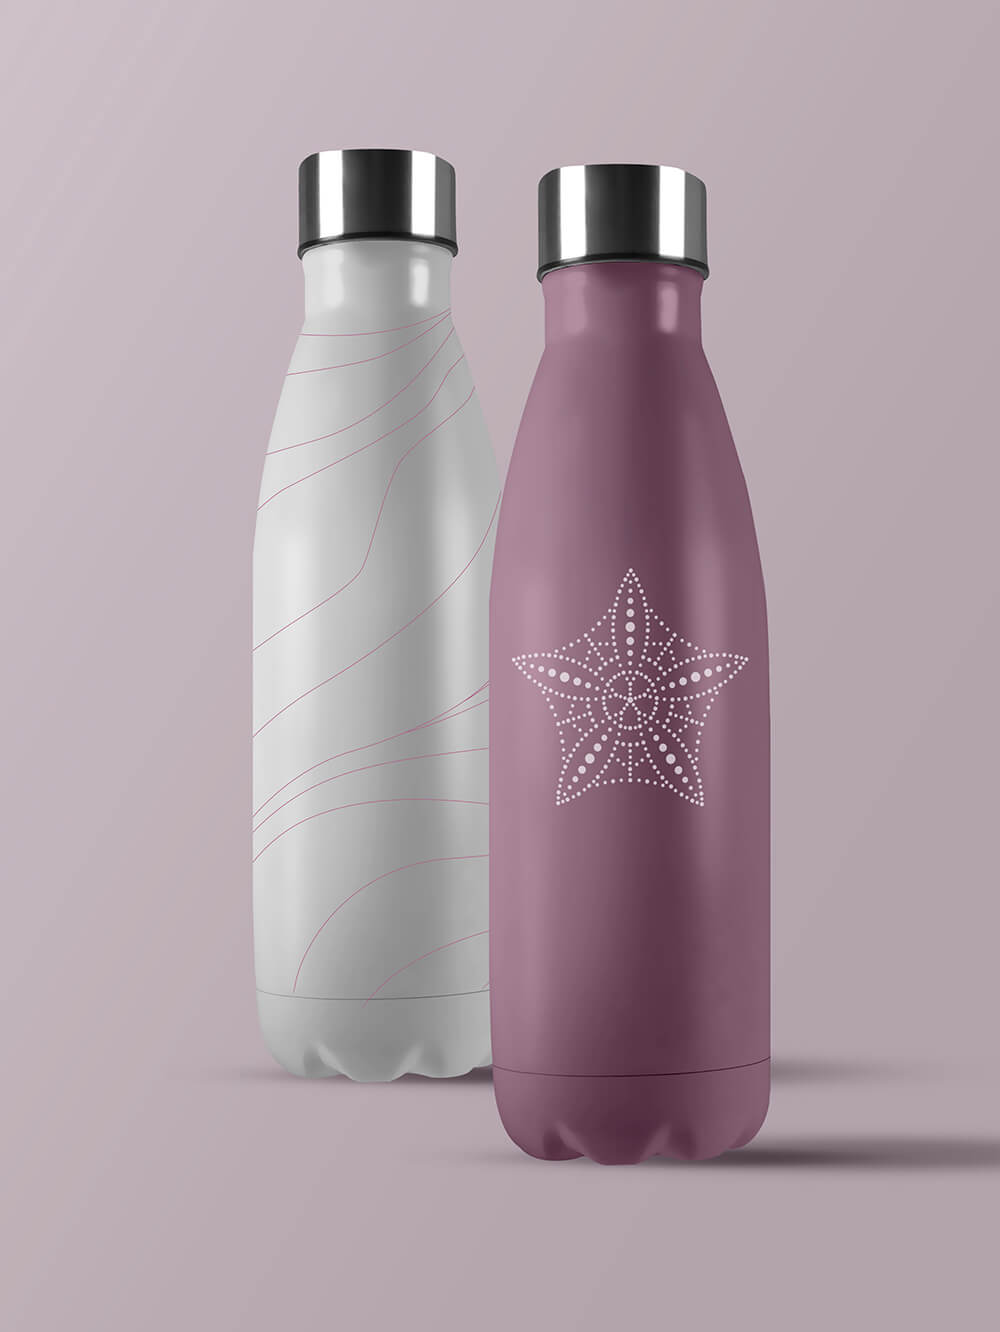 Tenderling Design Nova Water Bottles